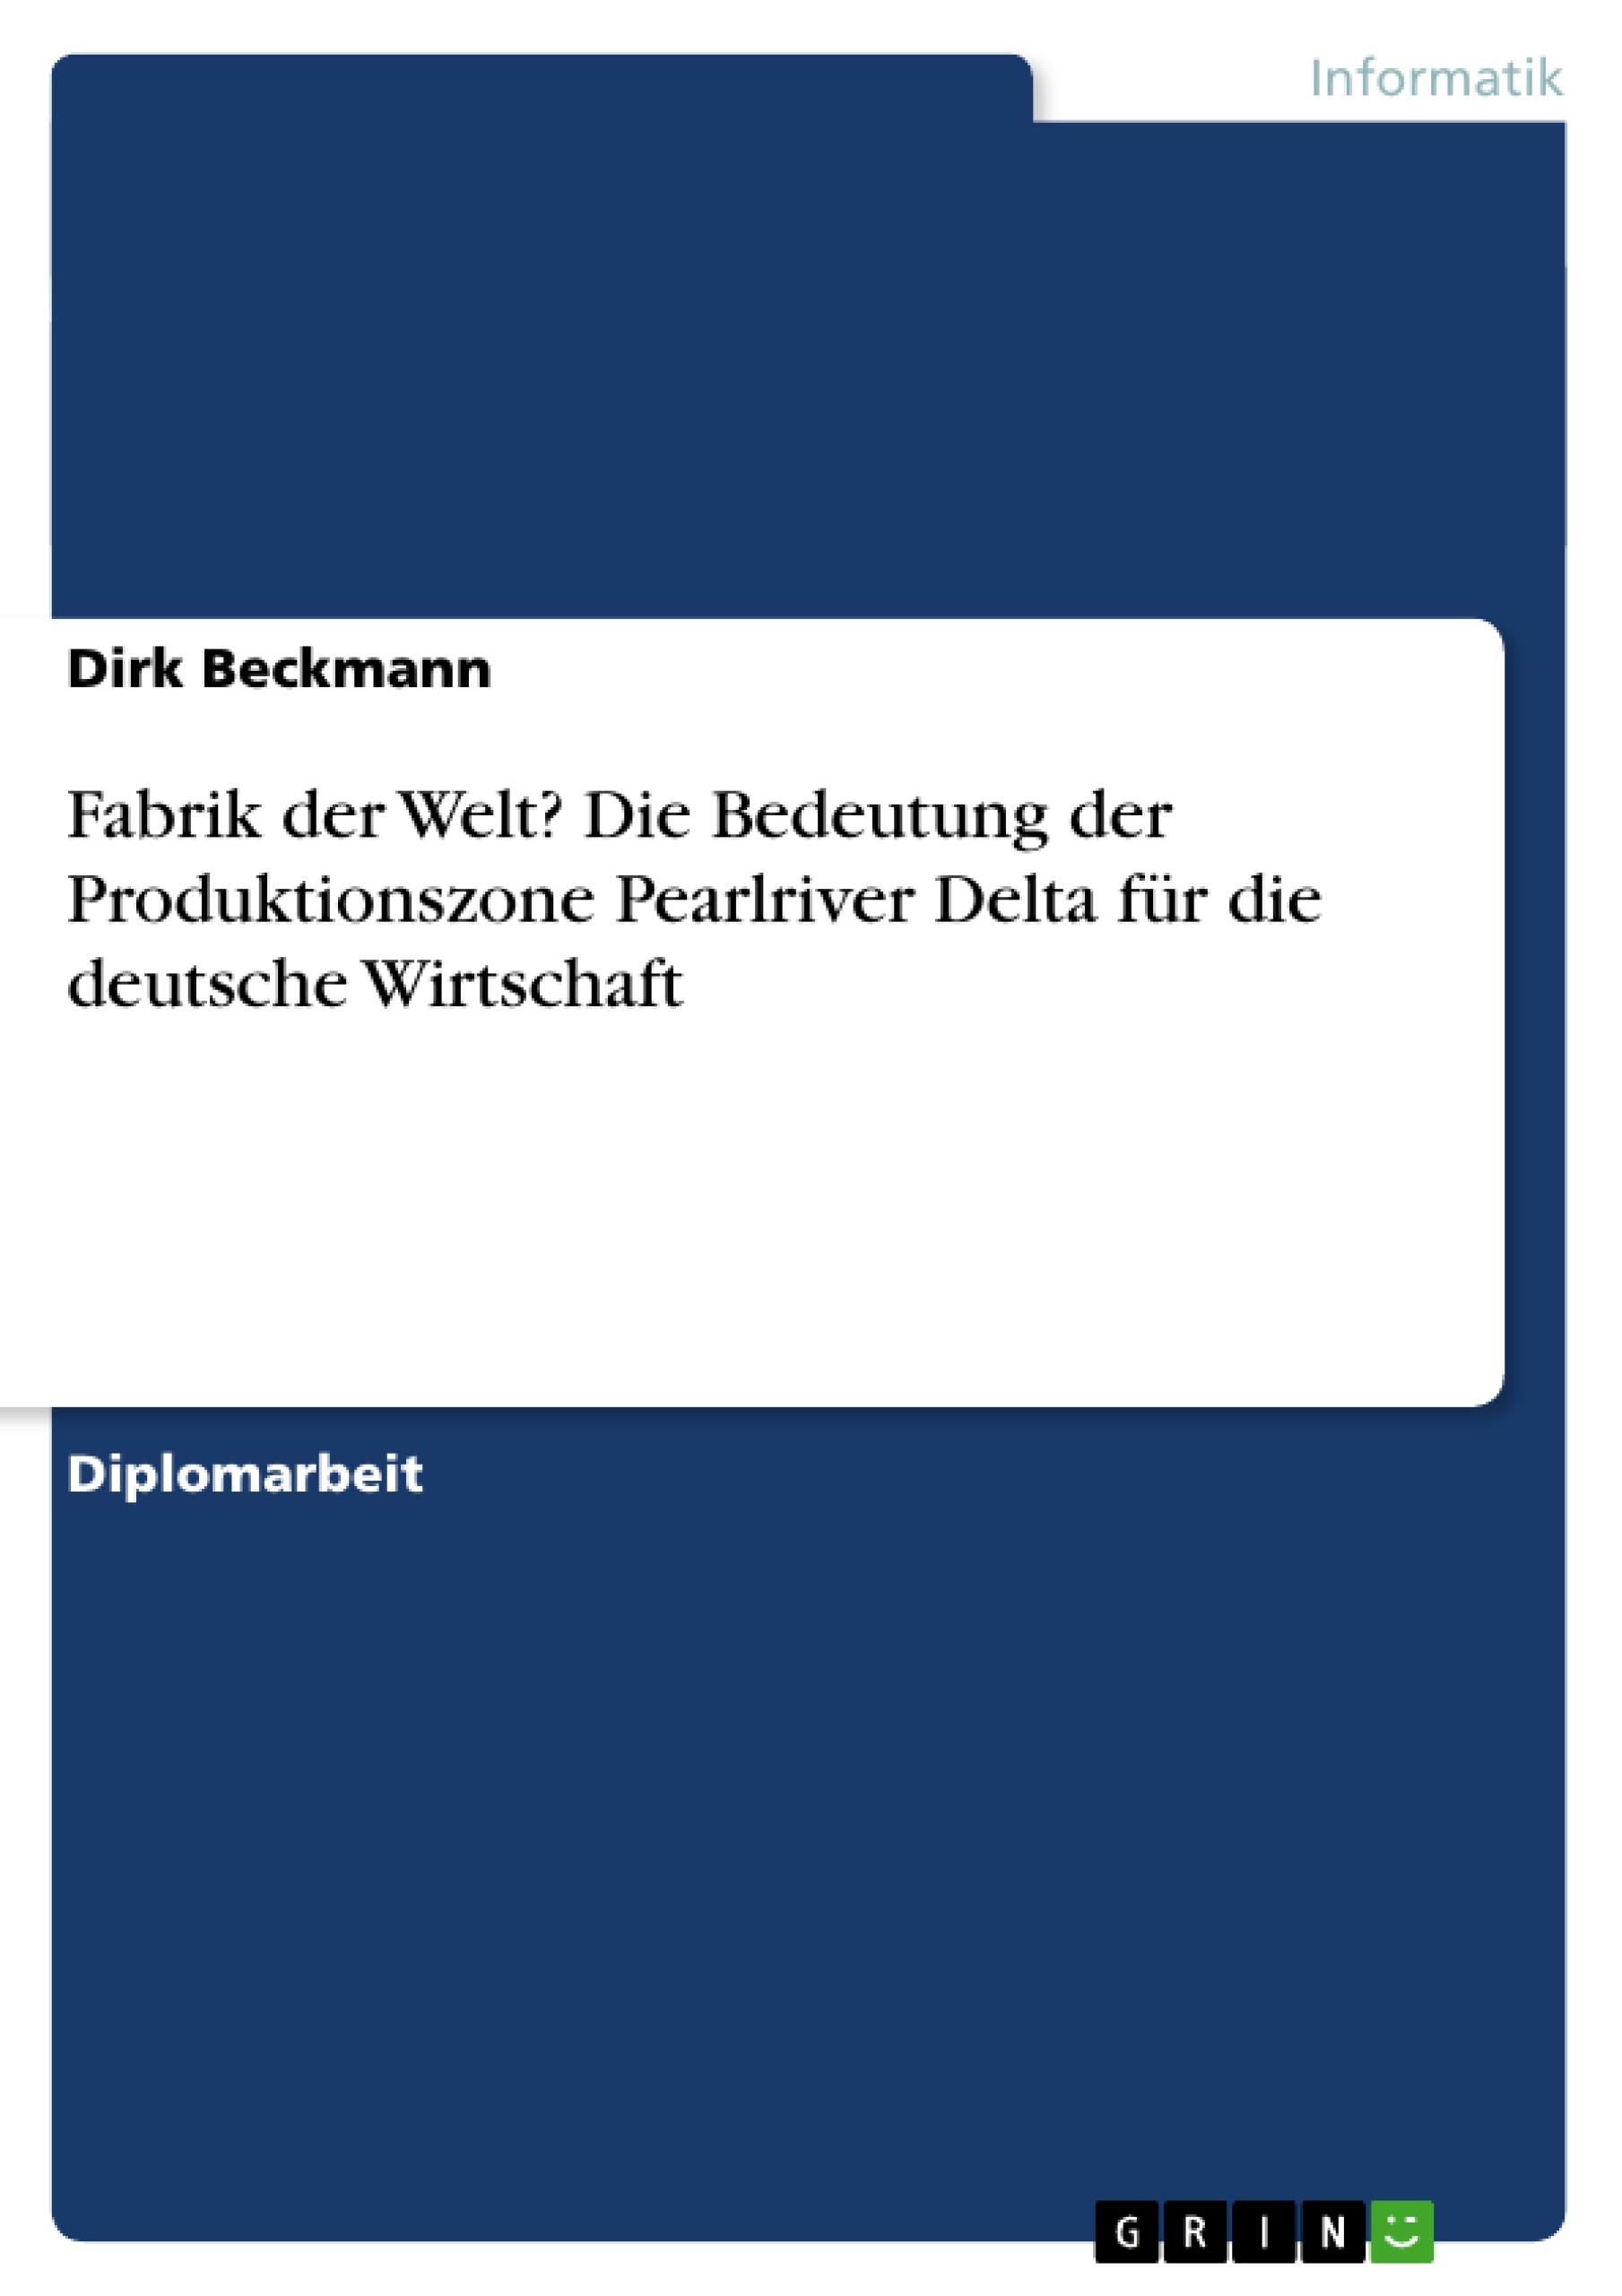 Title: Fabrik der Welt? Die Bedeutung der Produktionszone Pearlriver Delta für die deutsche Wirtschaft